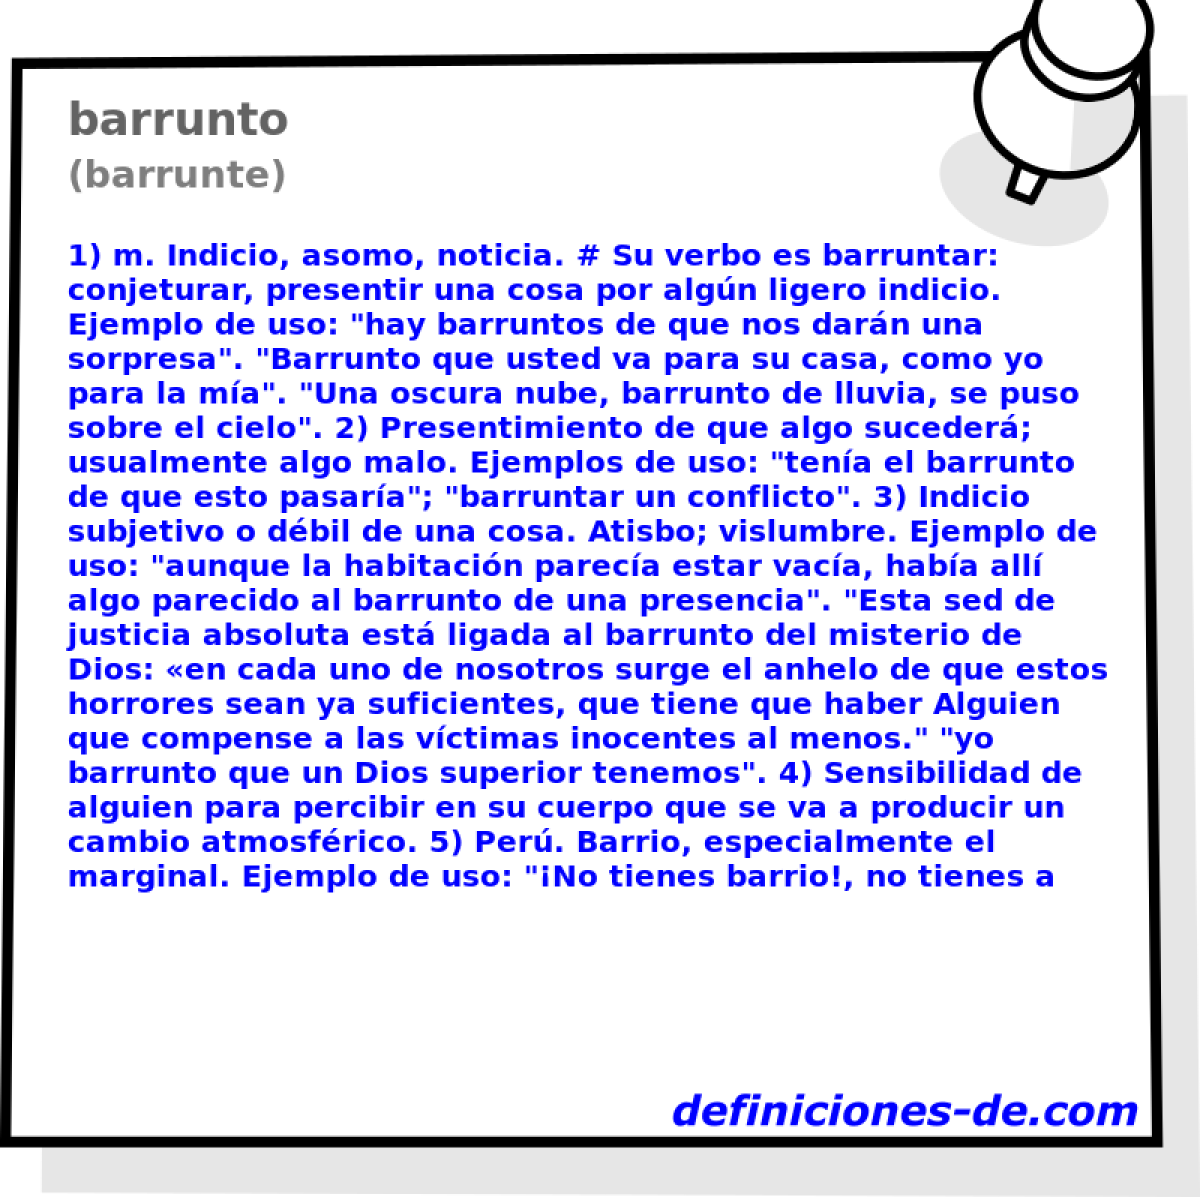 barrunto (barrunte)